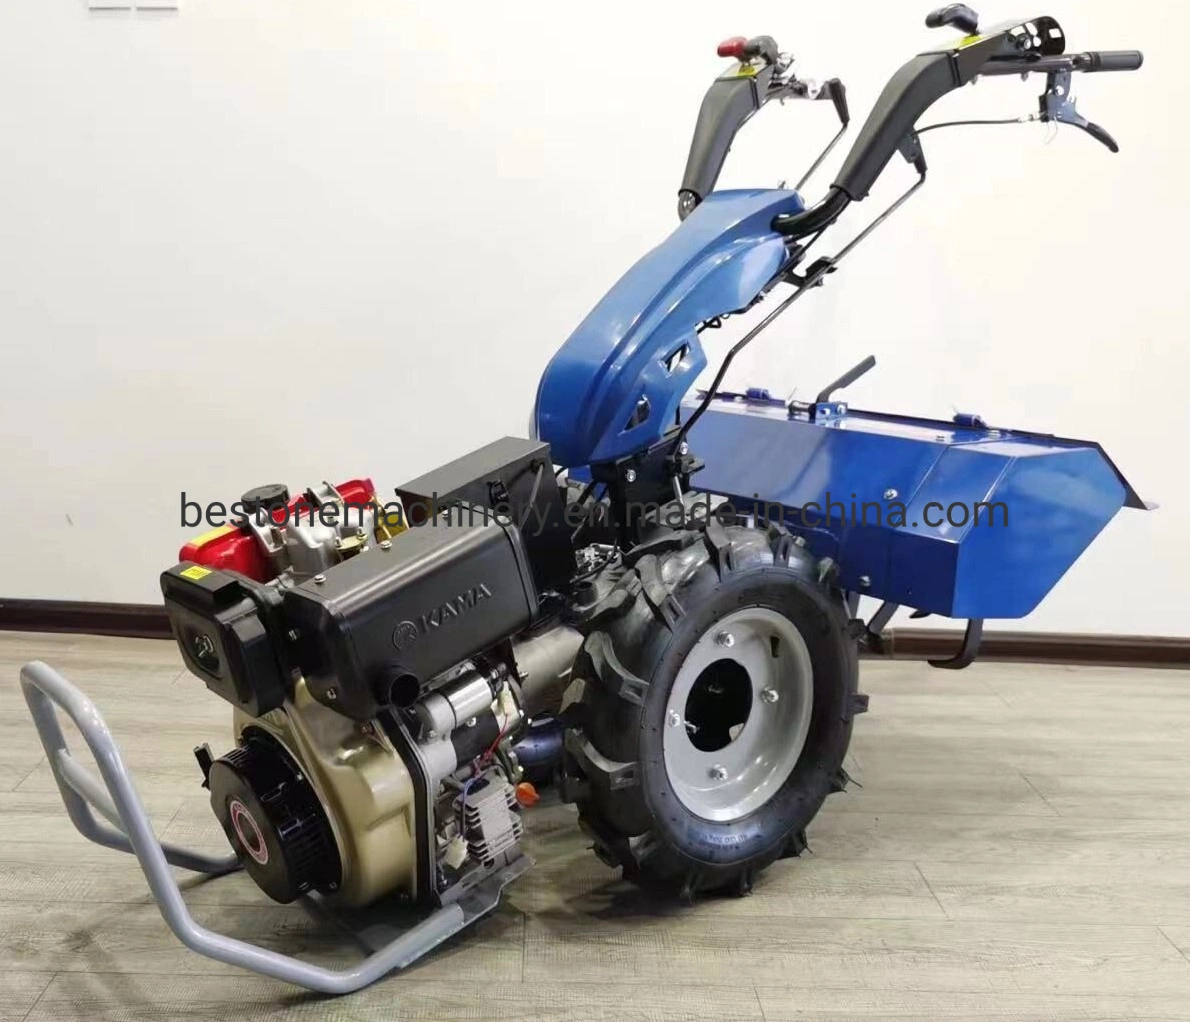 Kama Multi-Fucntion motor diésel de 10 CV de potencia agrícola lanza giratorio